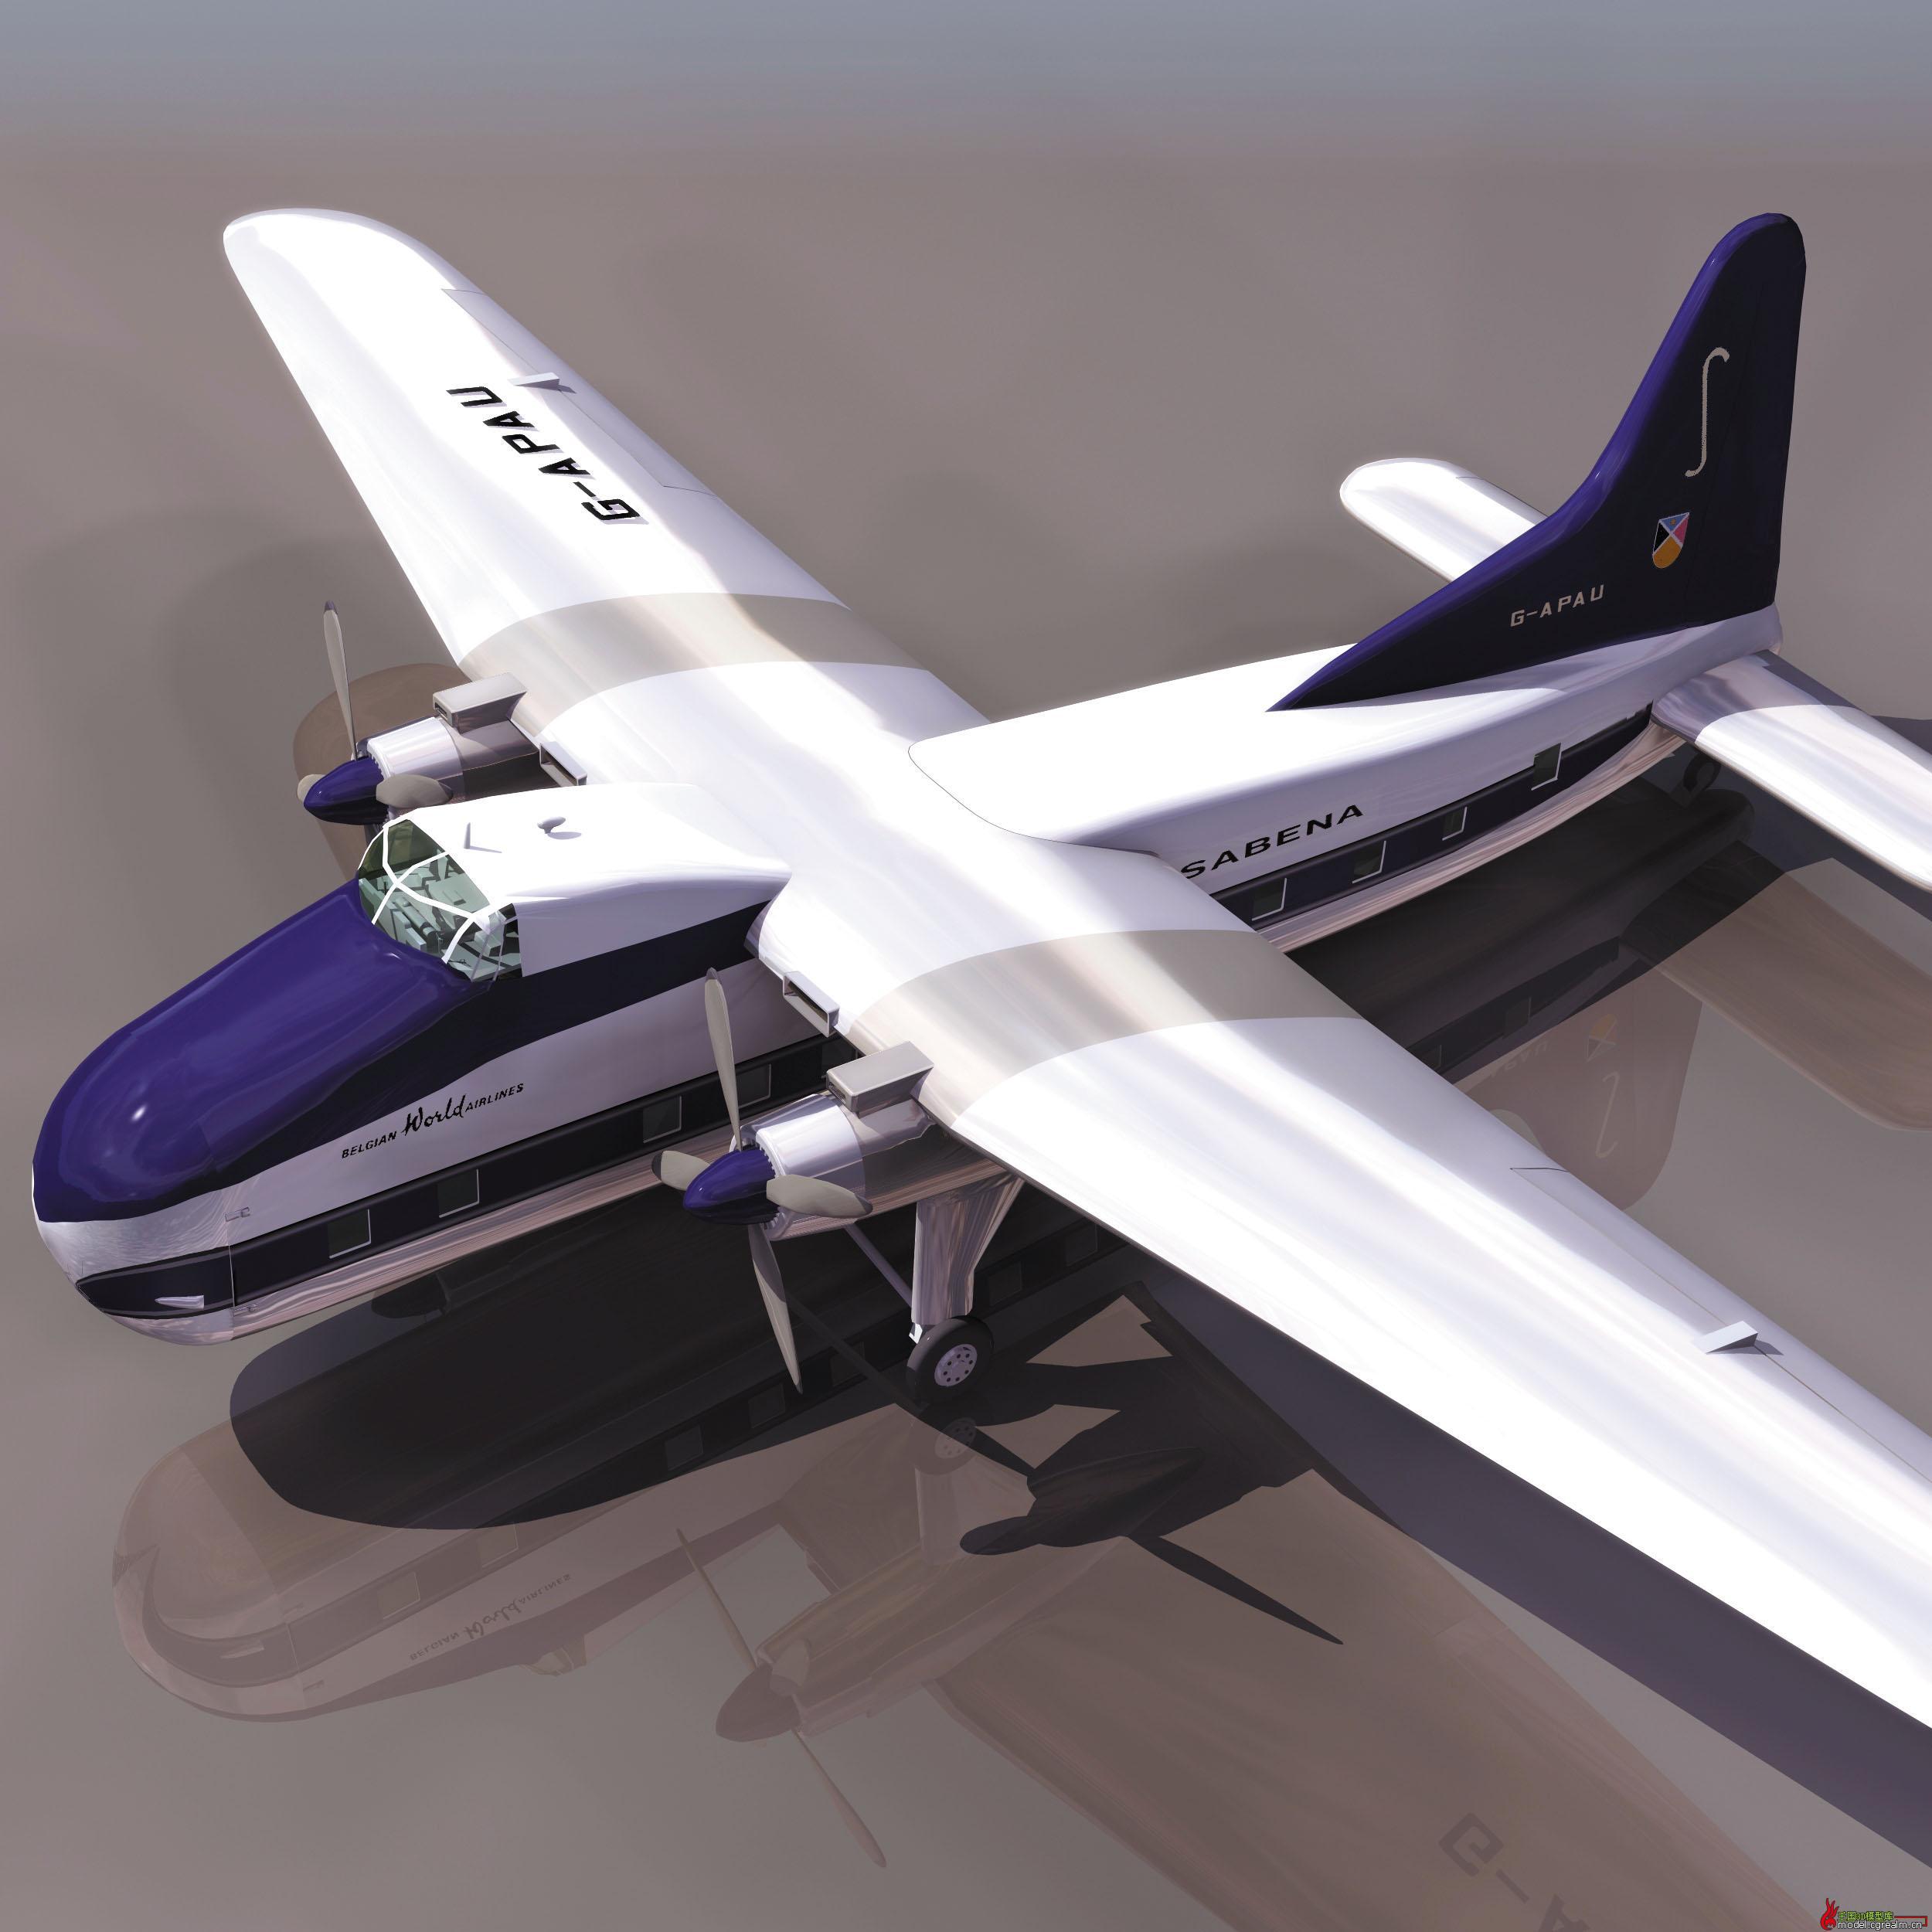 飞机模型中国南航空客A380合金展示航模玩具合金航空模型-阿里巴巴